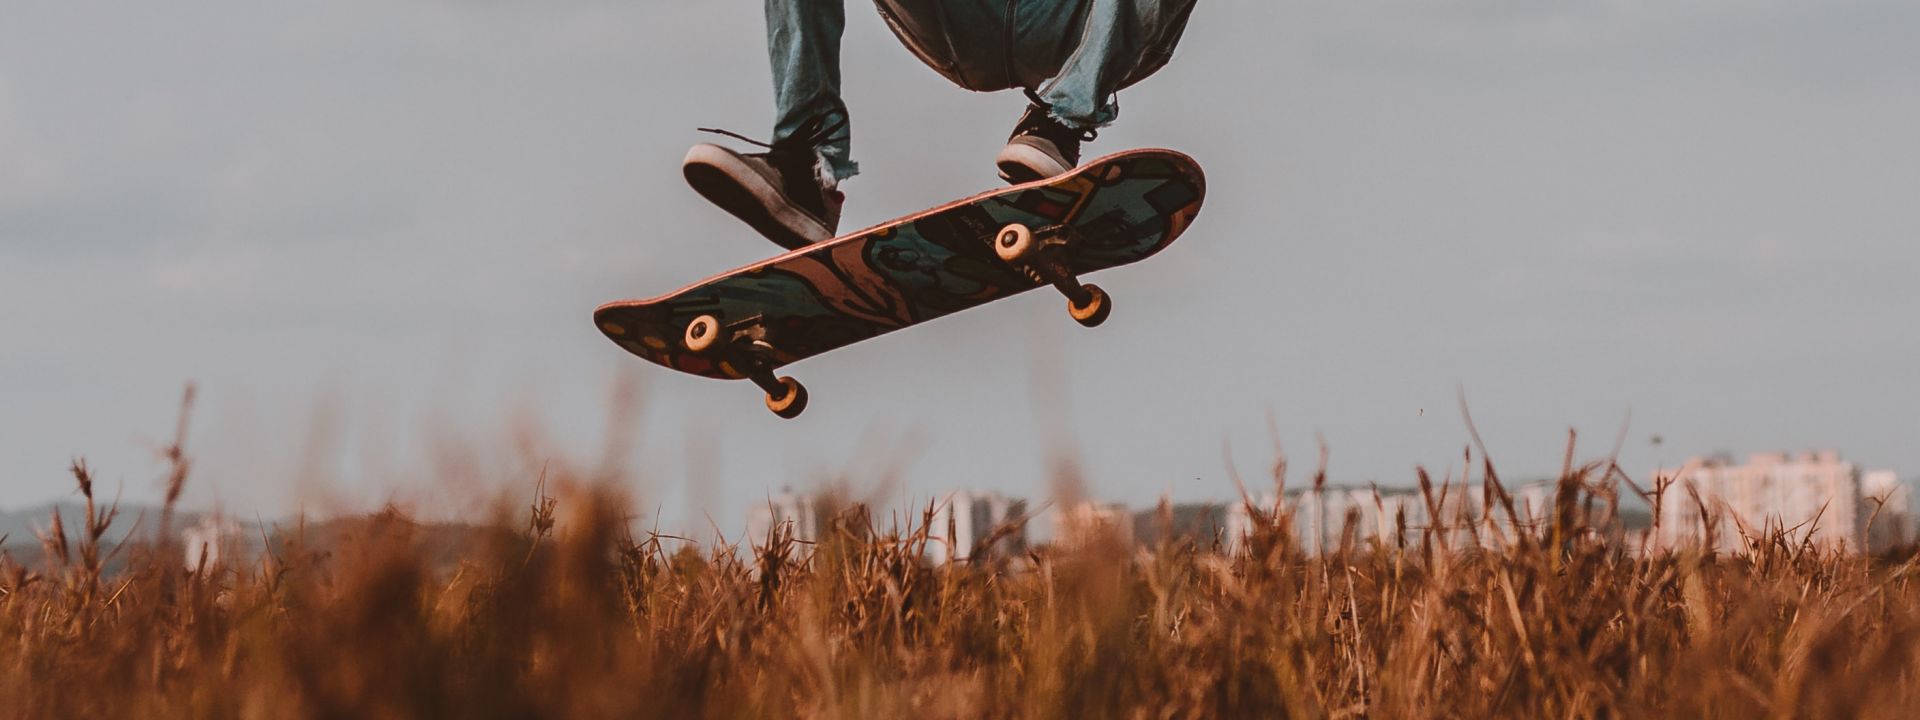 Foto einer springenden Person auf dem Skateboard, auf welchem nur die Füße und das Skateboard zu sehen sind.